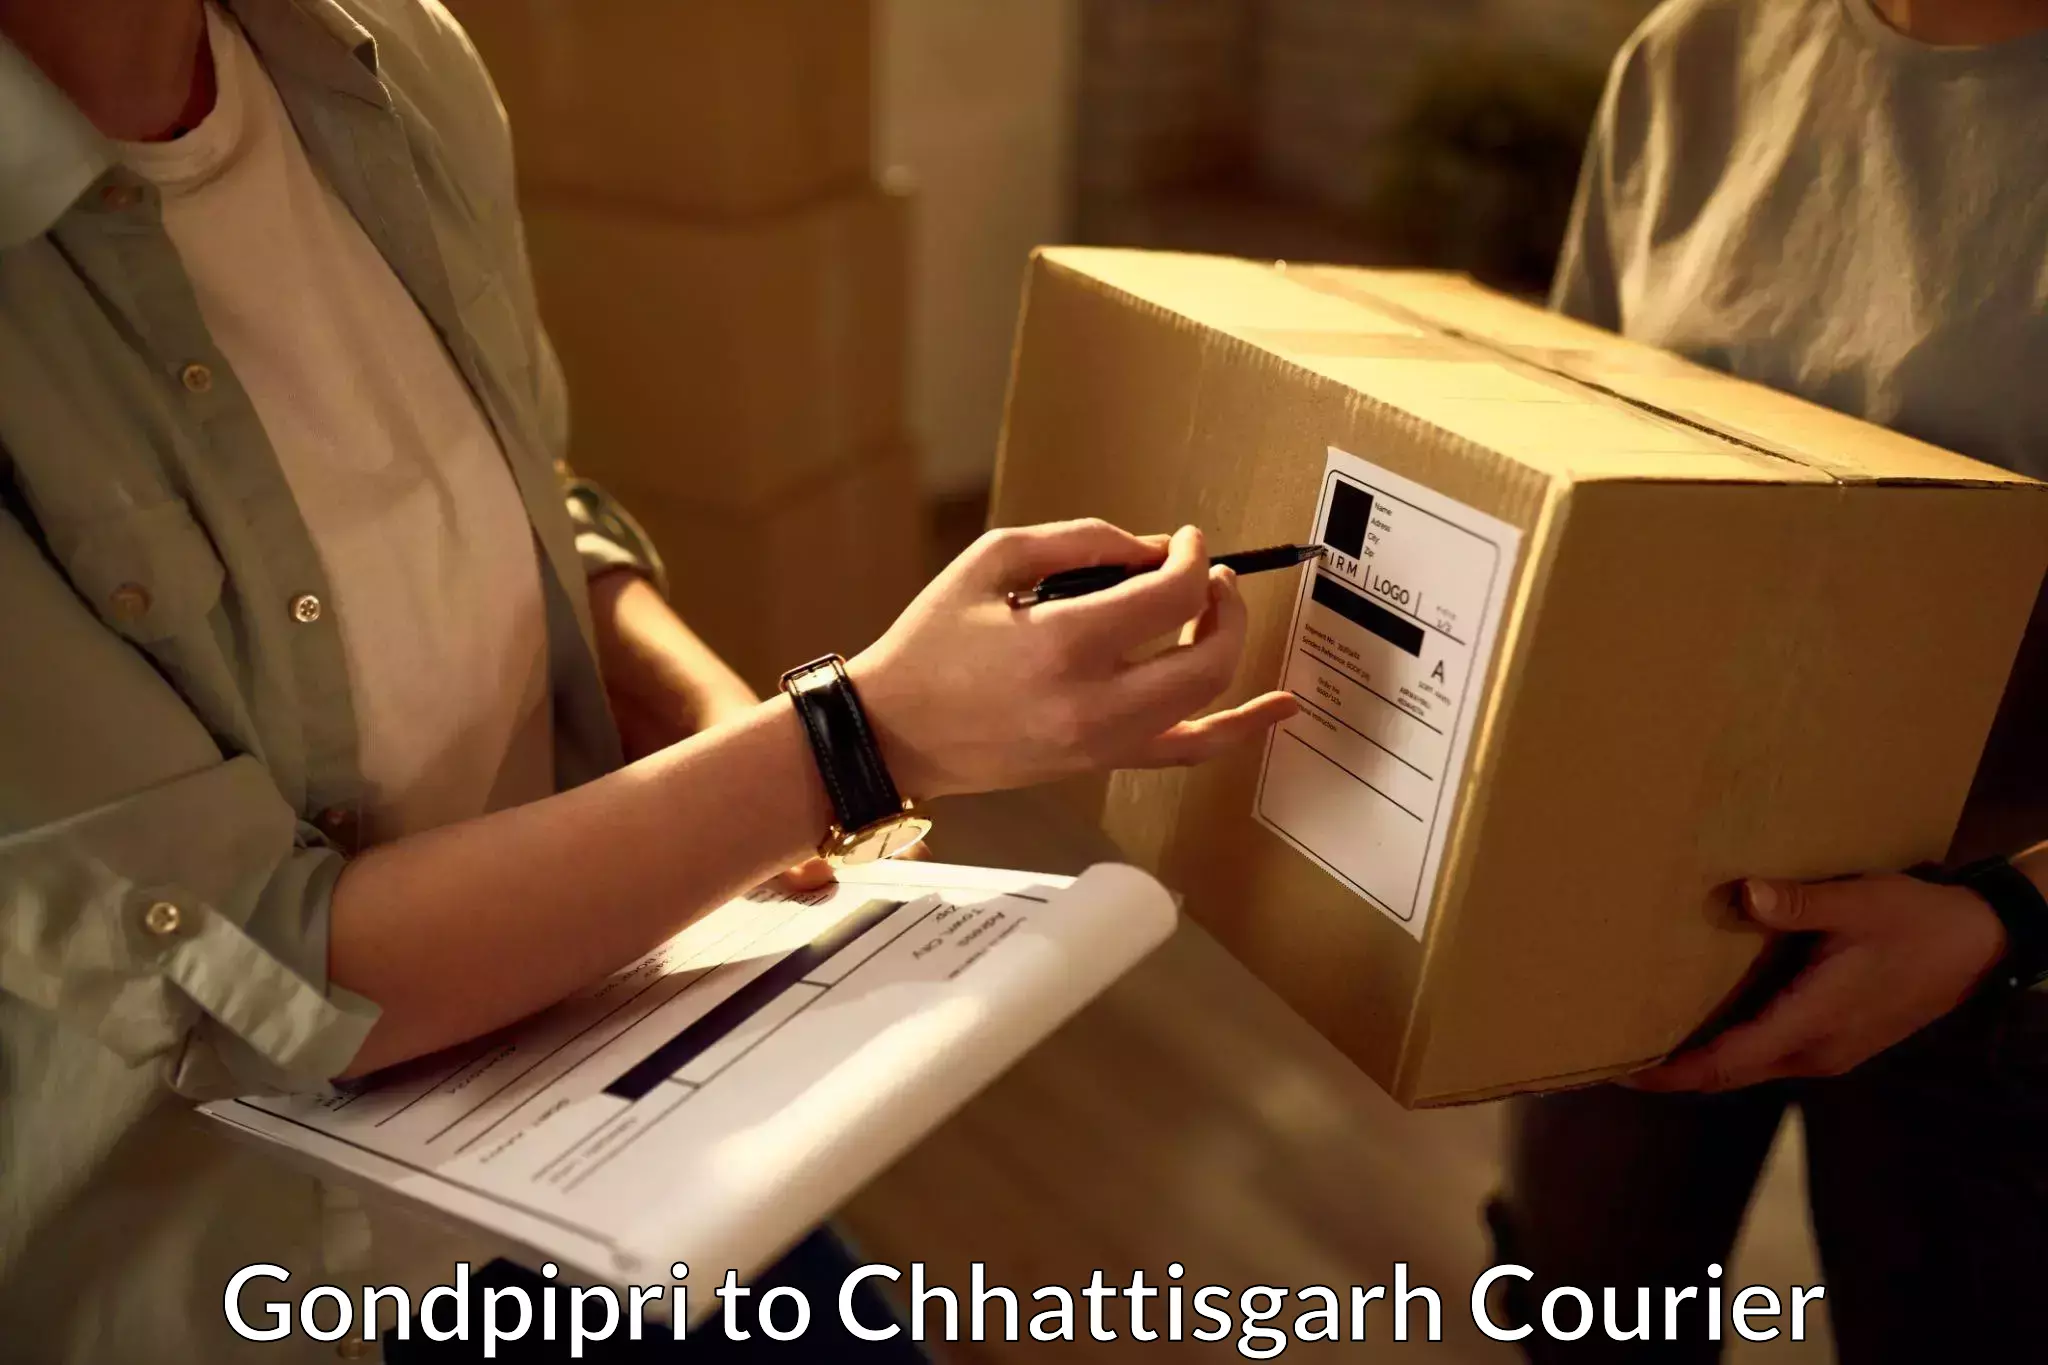 Same-day delivery options Gondpipri to Chhattisgarh